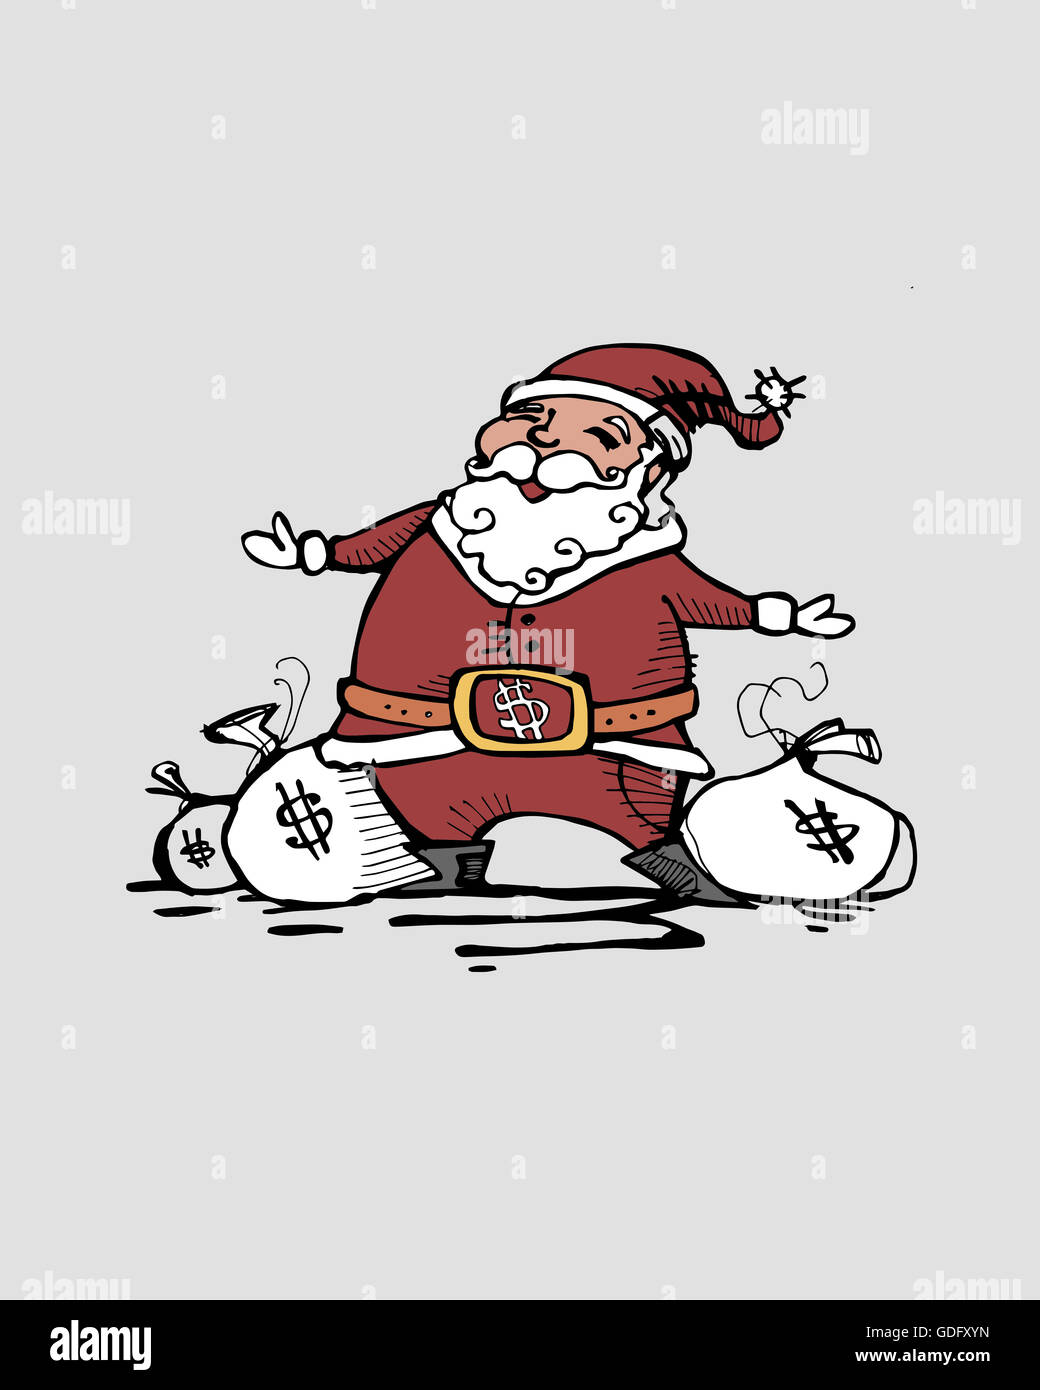 Ilustración dibujada a mano o un dibujo de Santa Claus con bolsas de dinero, que representa el consumismo Foto de stock